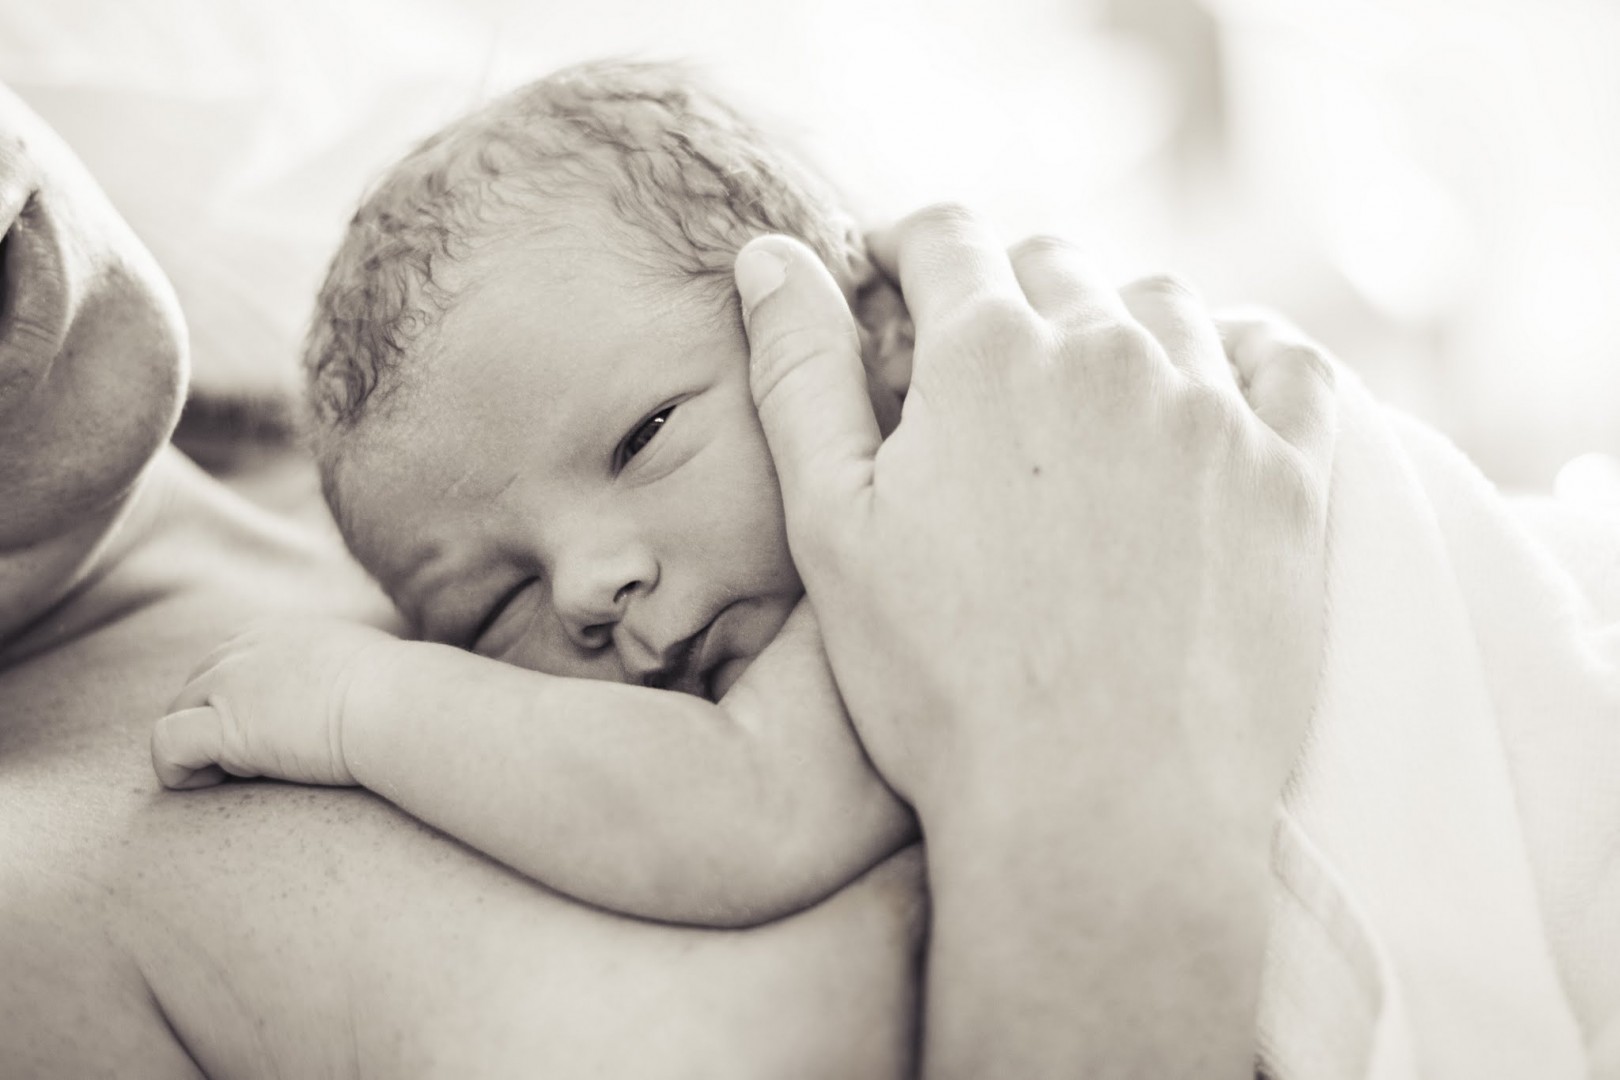 Neugeborenes auf Brust der Mutter, Auge offen, Sepia Filter